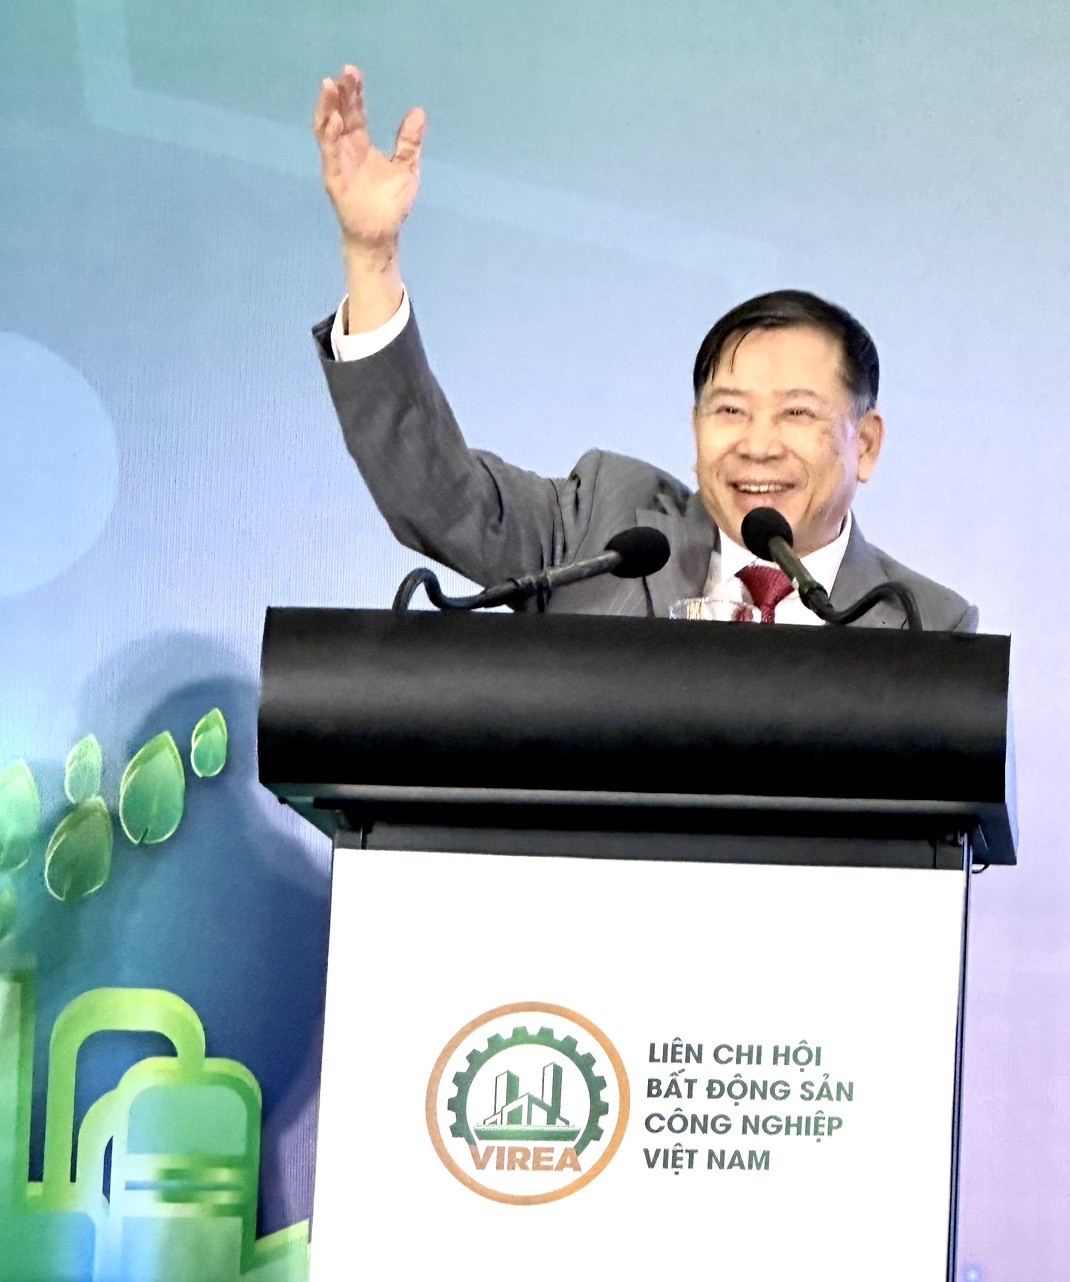 TS. Nguyễn Văn Khôi được bầu làm Chủ tịch Liên Chi hội Bất động sản công nghiệp Việt Nam